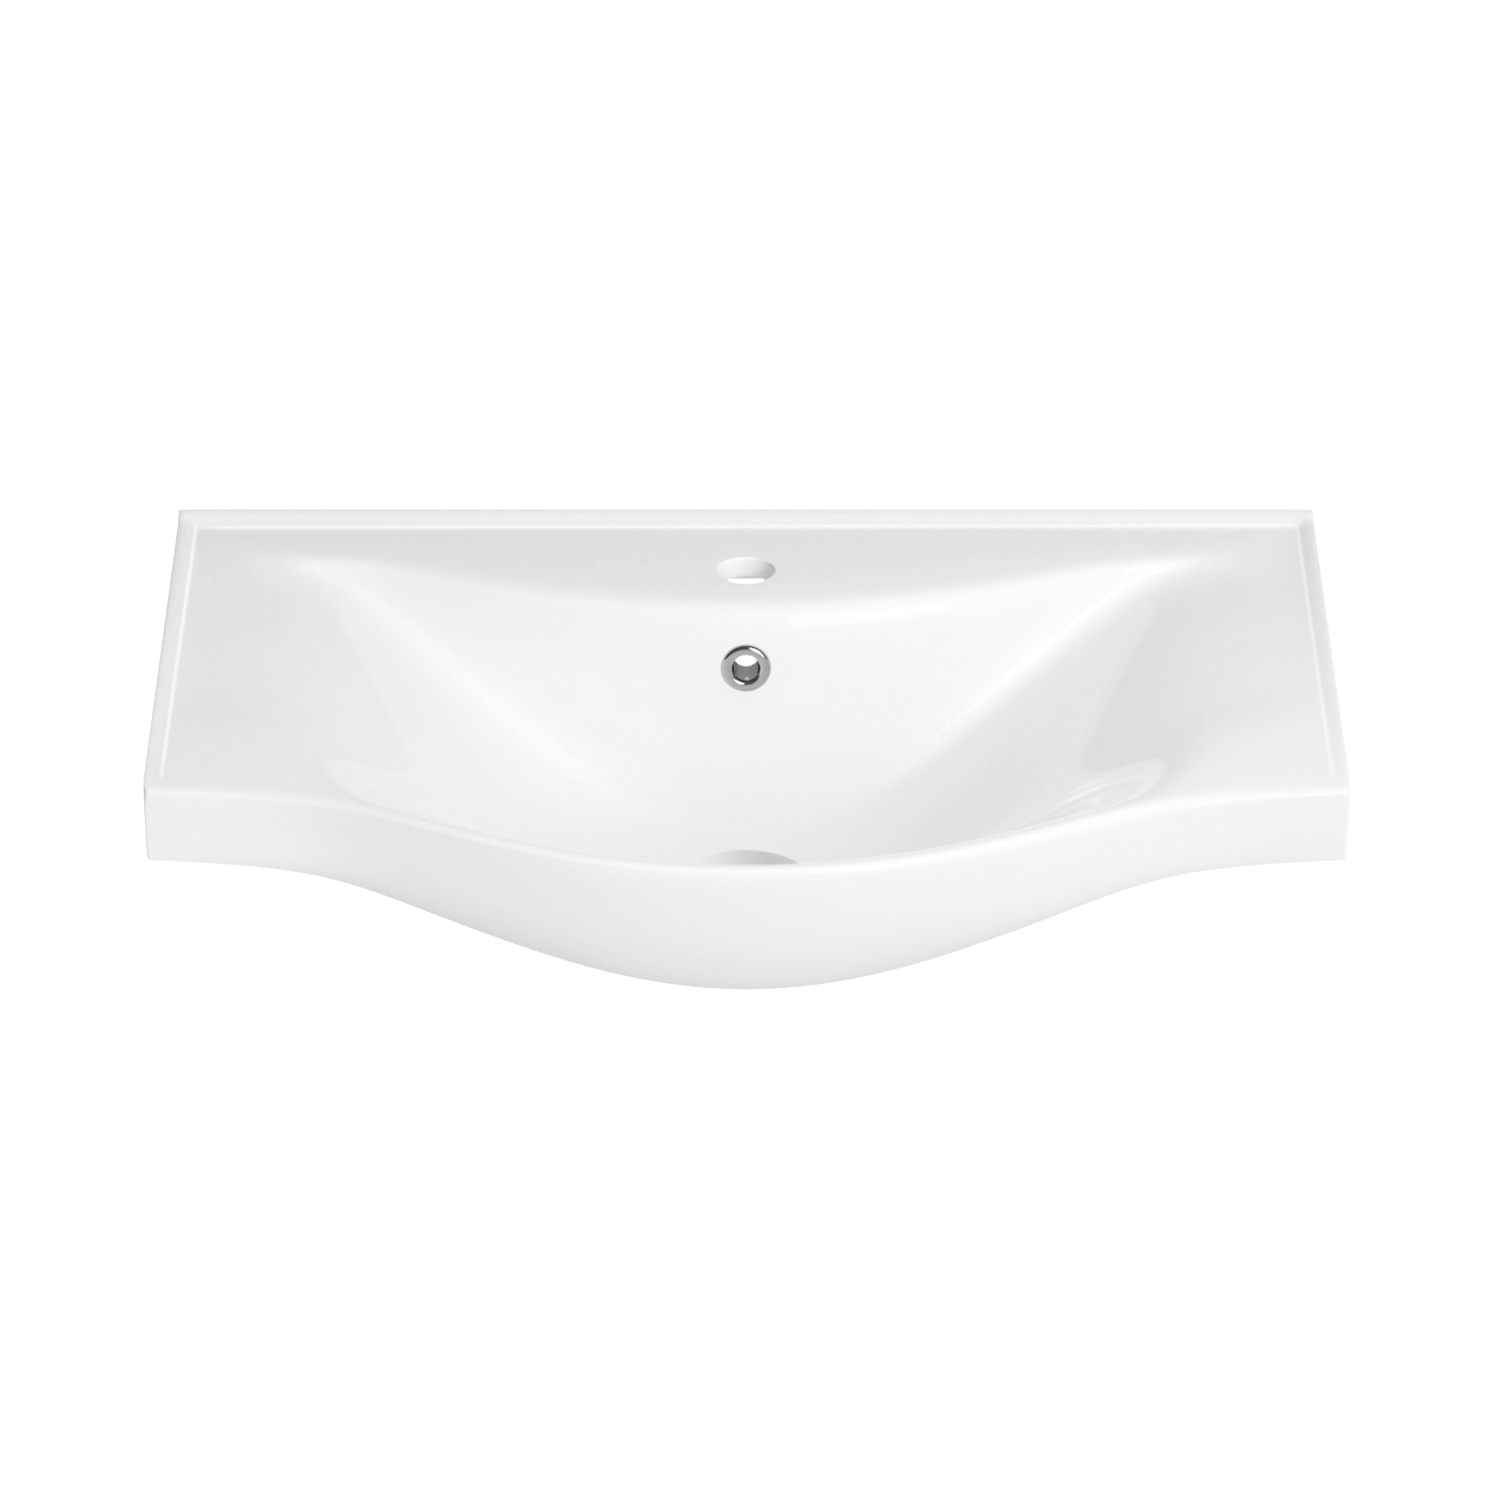 Подвесная раковина Wellsee Bisou 151204000, ширина 60 см, глянцевый белый подвесная мебельная раковина для ванной wellsee